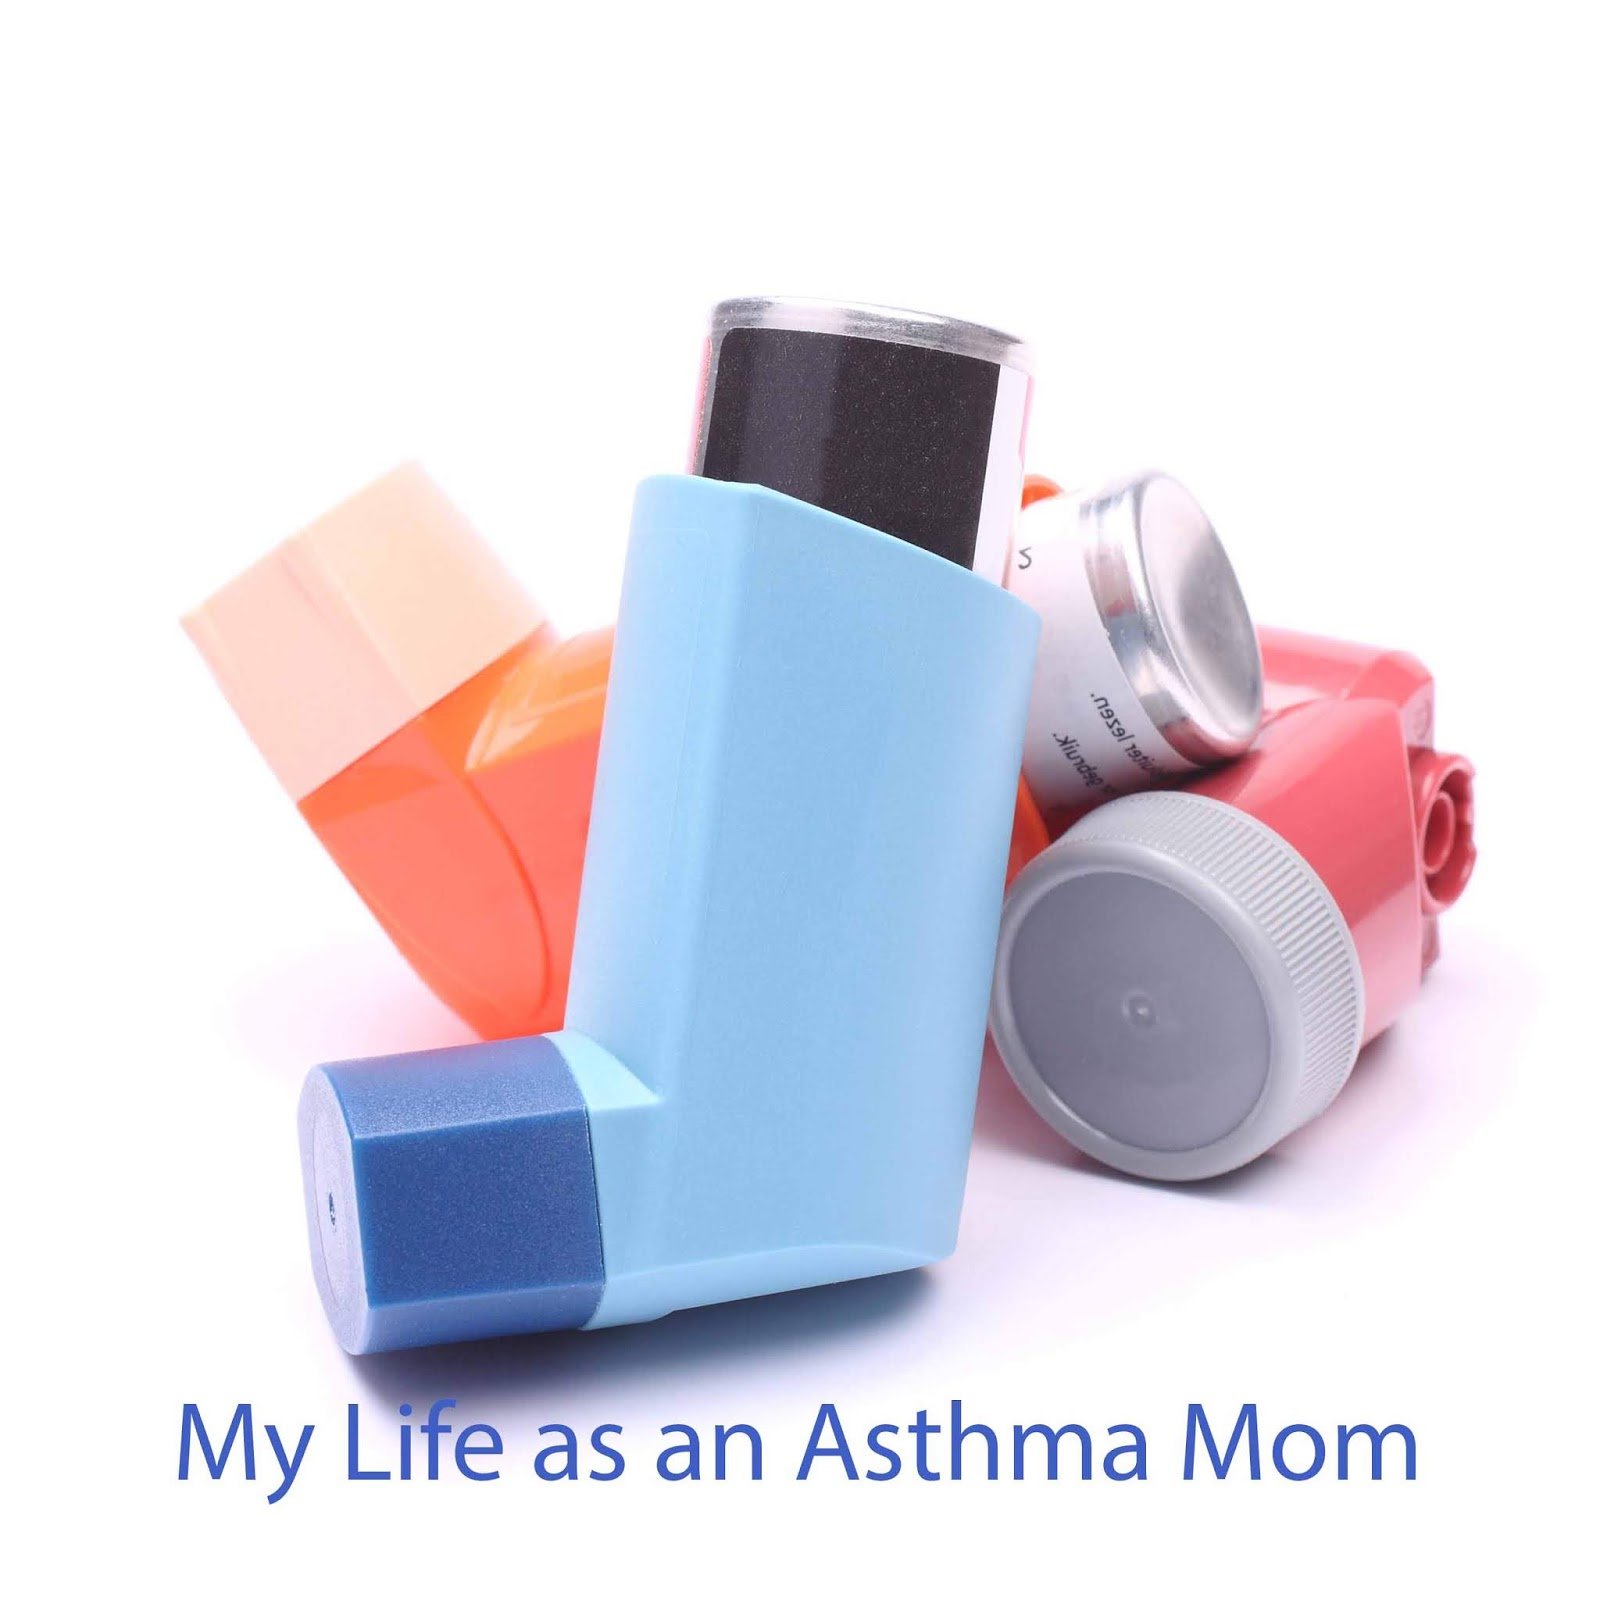 My Life as an Asthma Mom